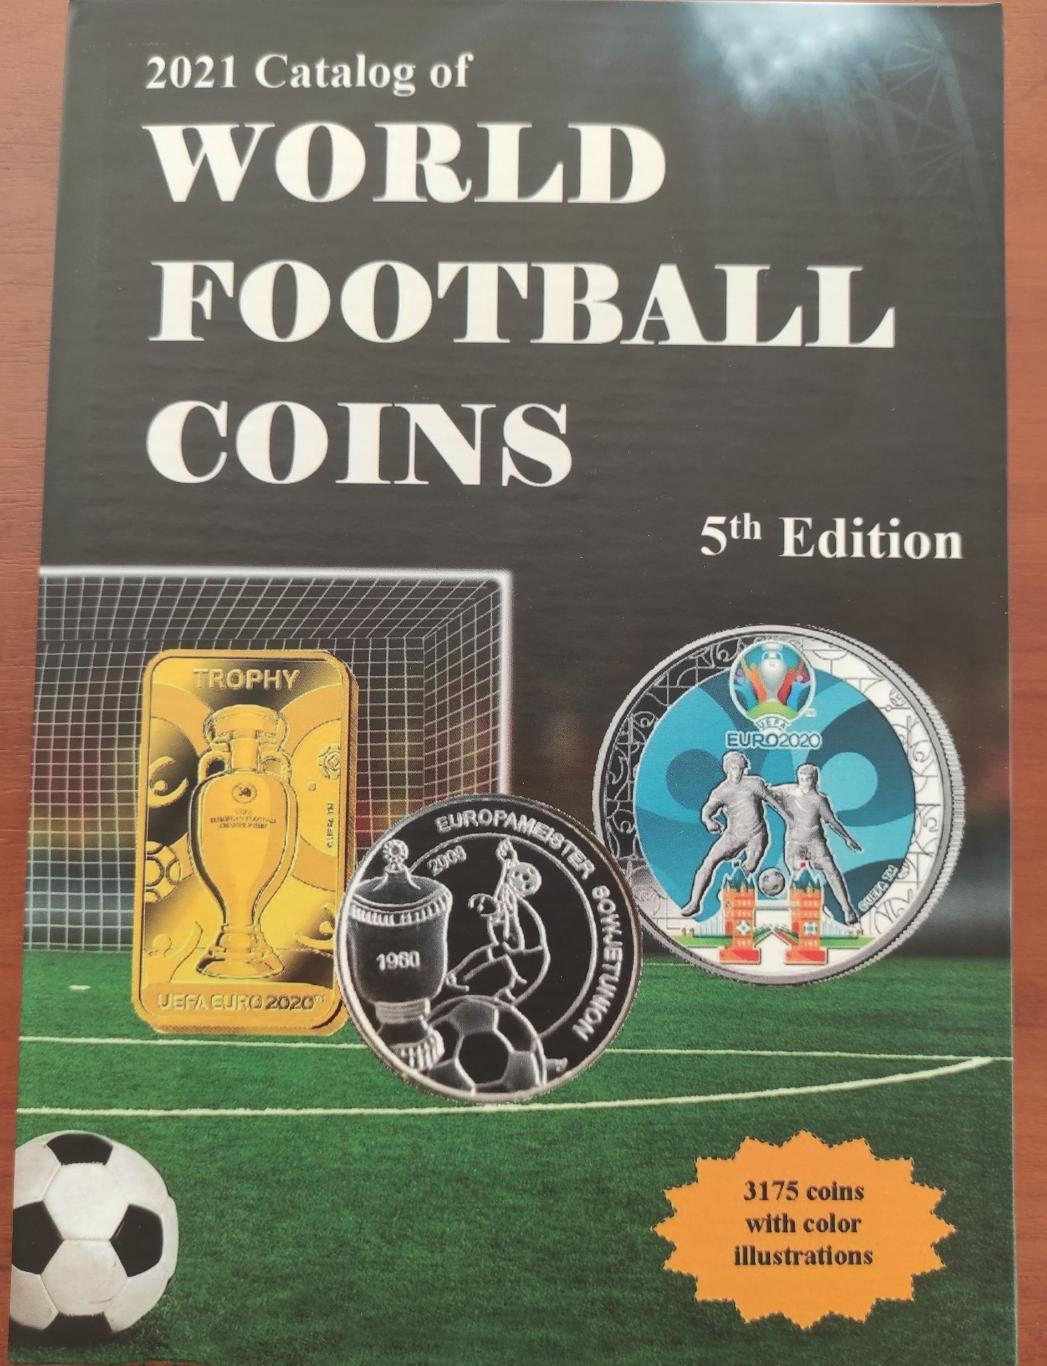 Каталог монет мира на футбольную тематику от автора.